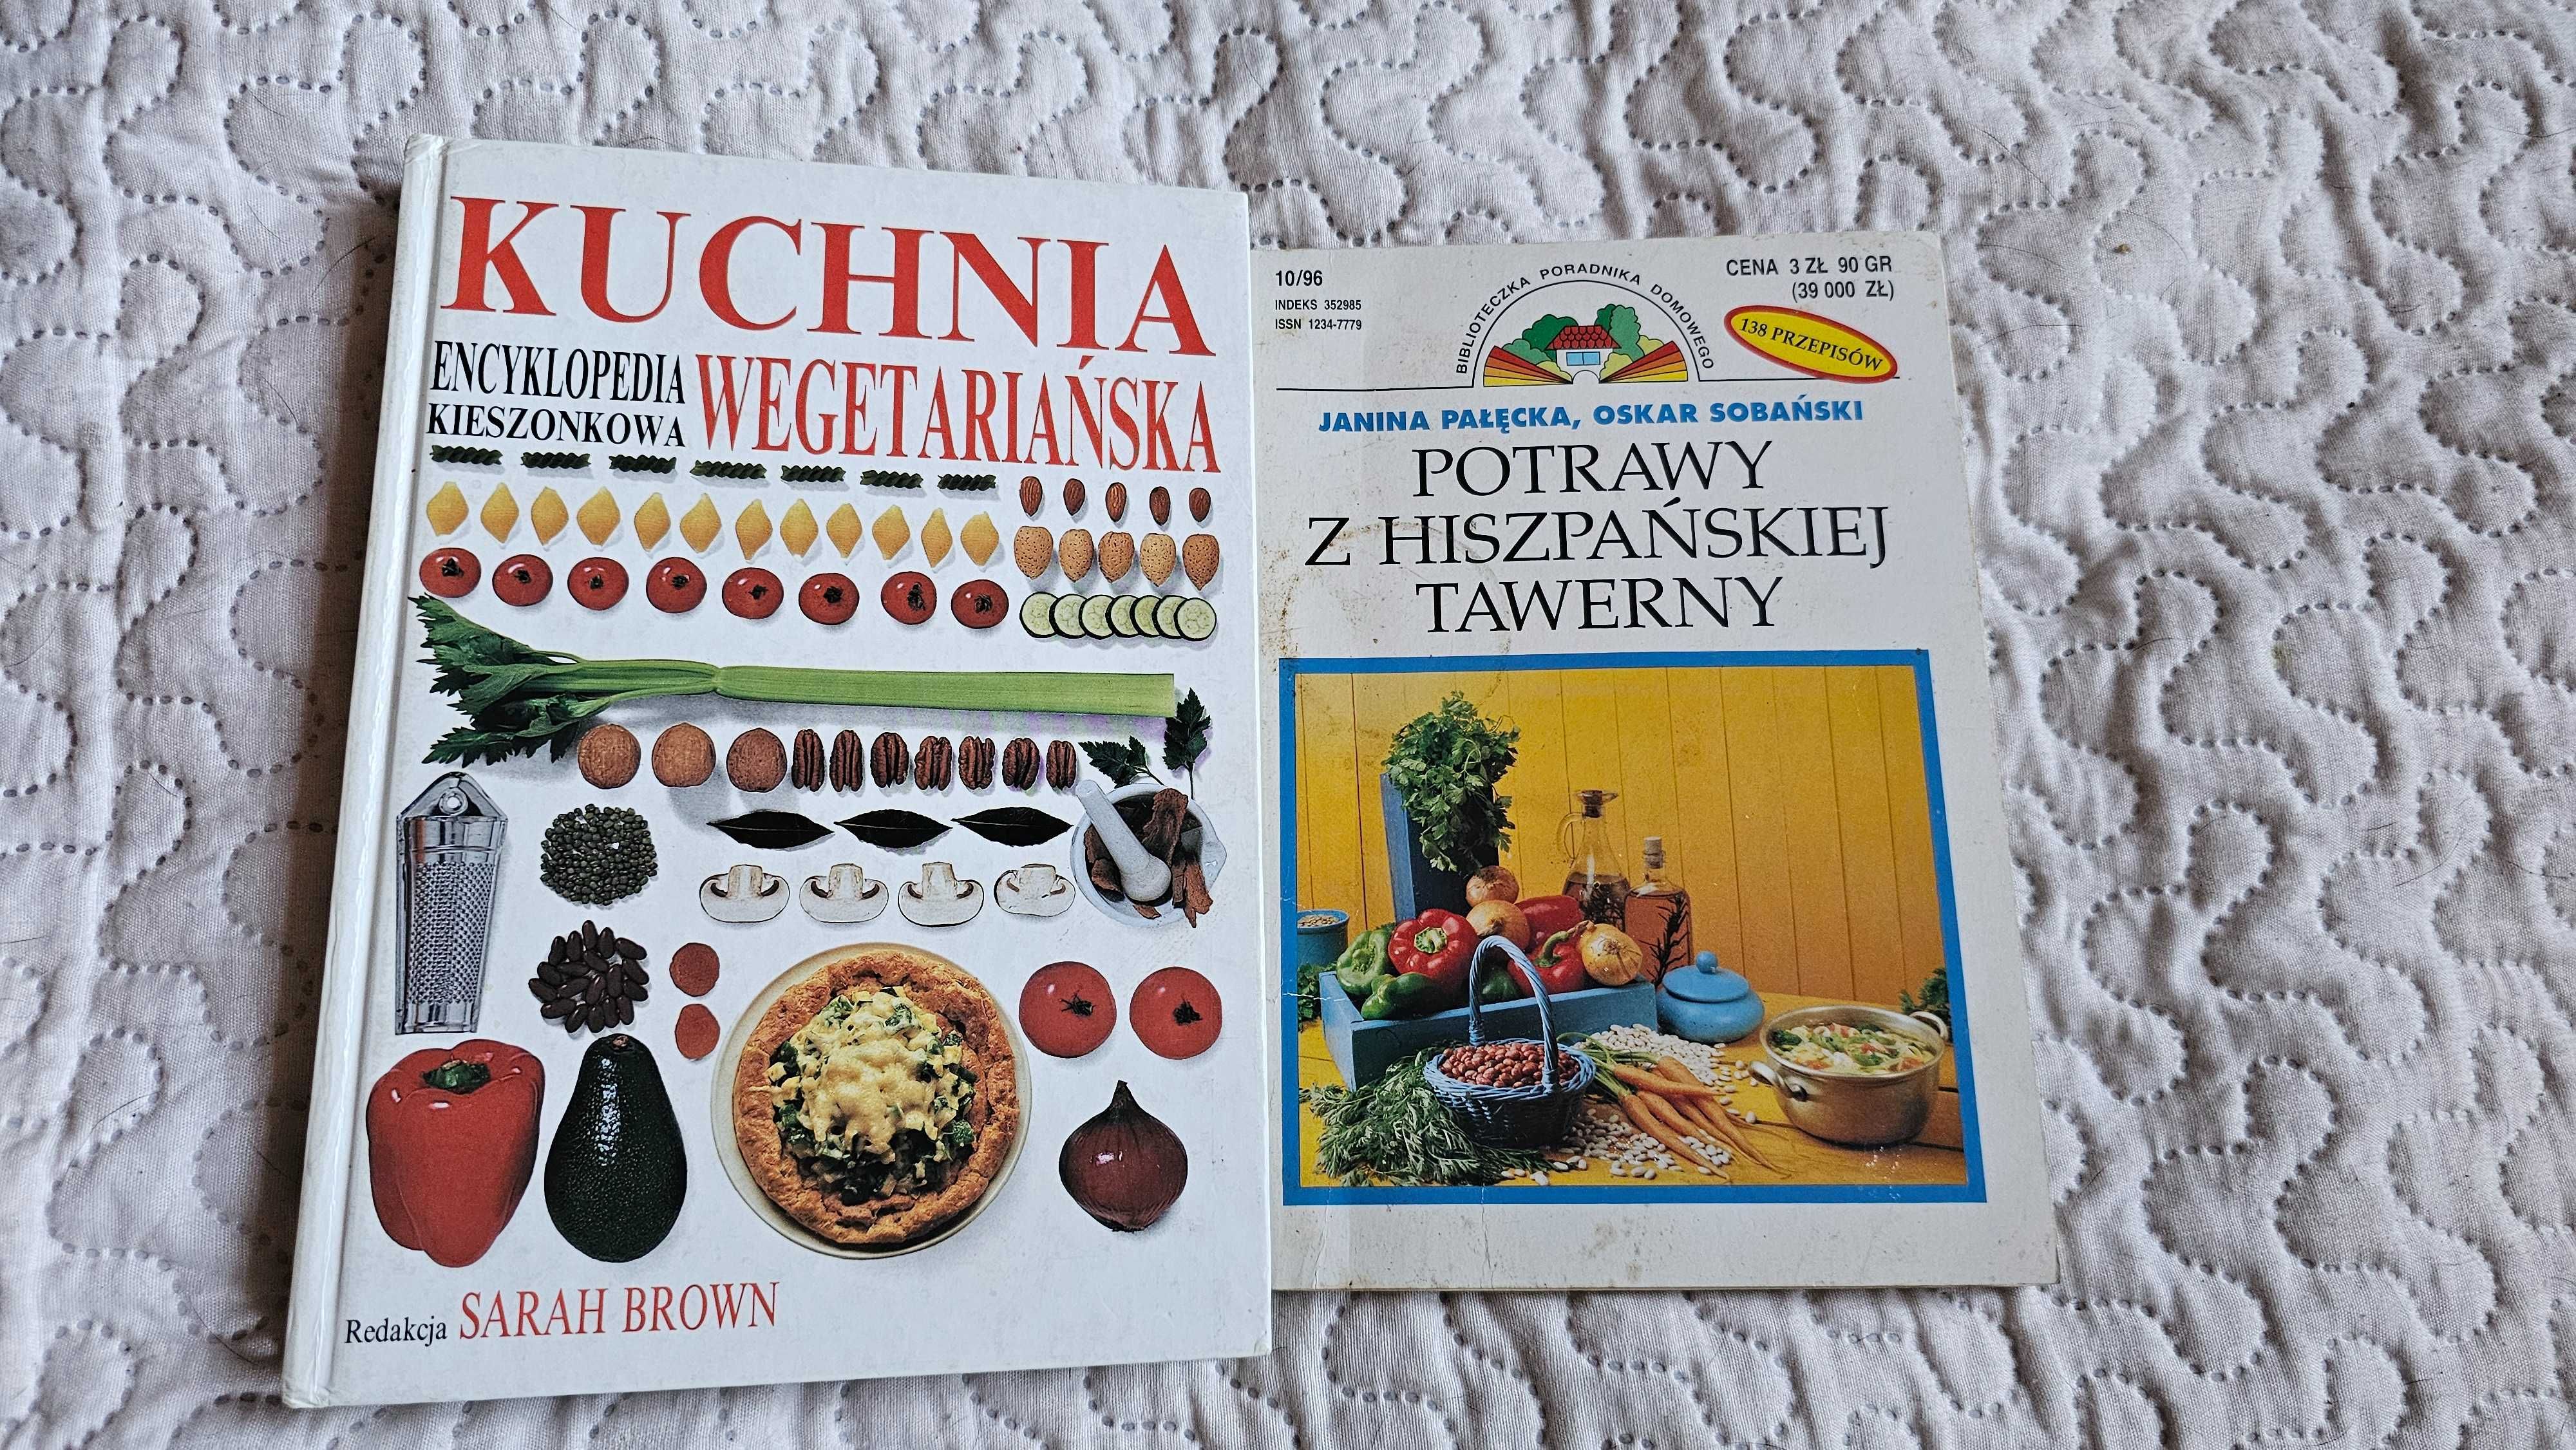 AU Kuchnia wegetariańska Encyklopedia kieszonkowa Potrawy hiszpańskie